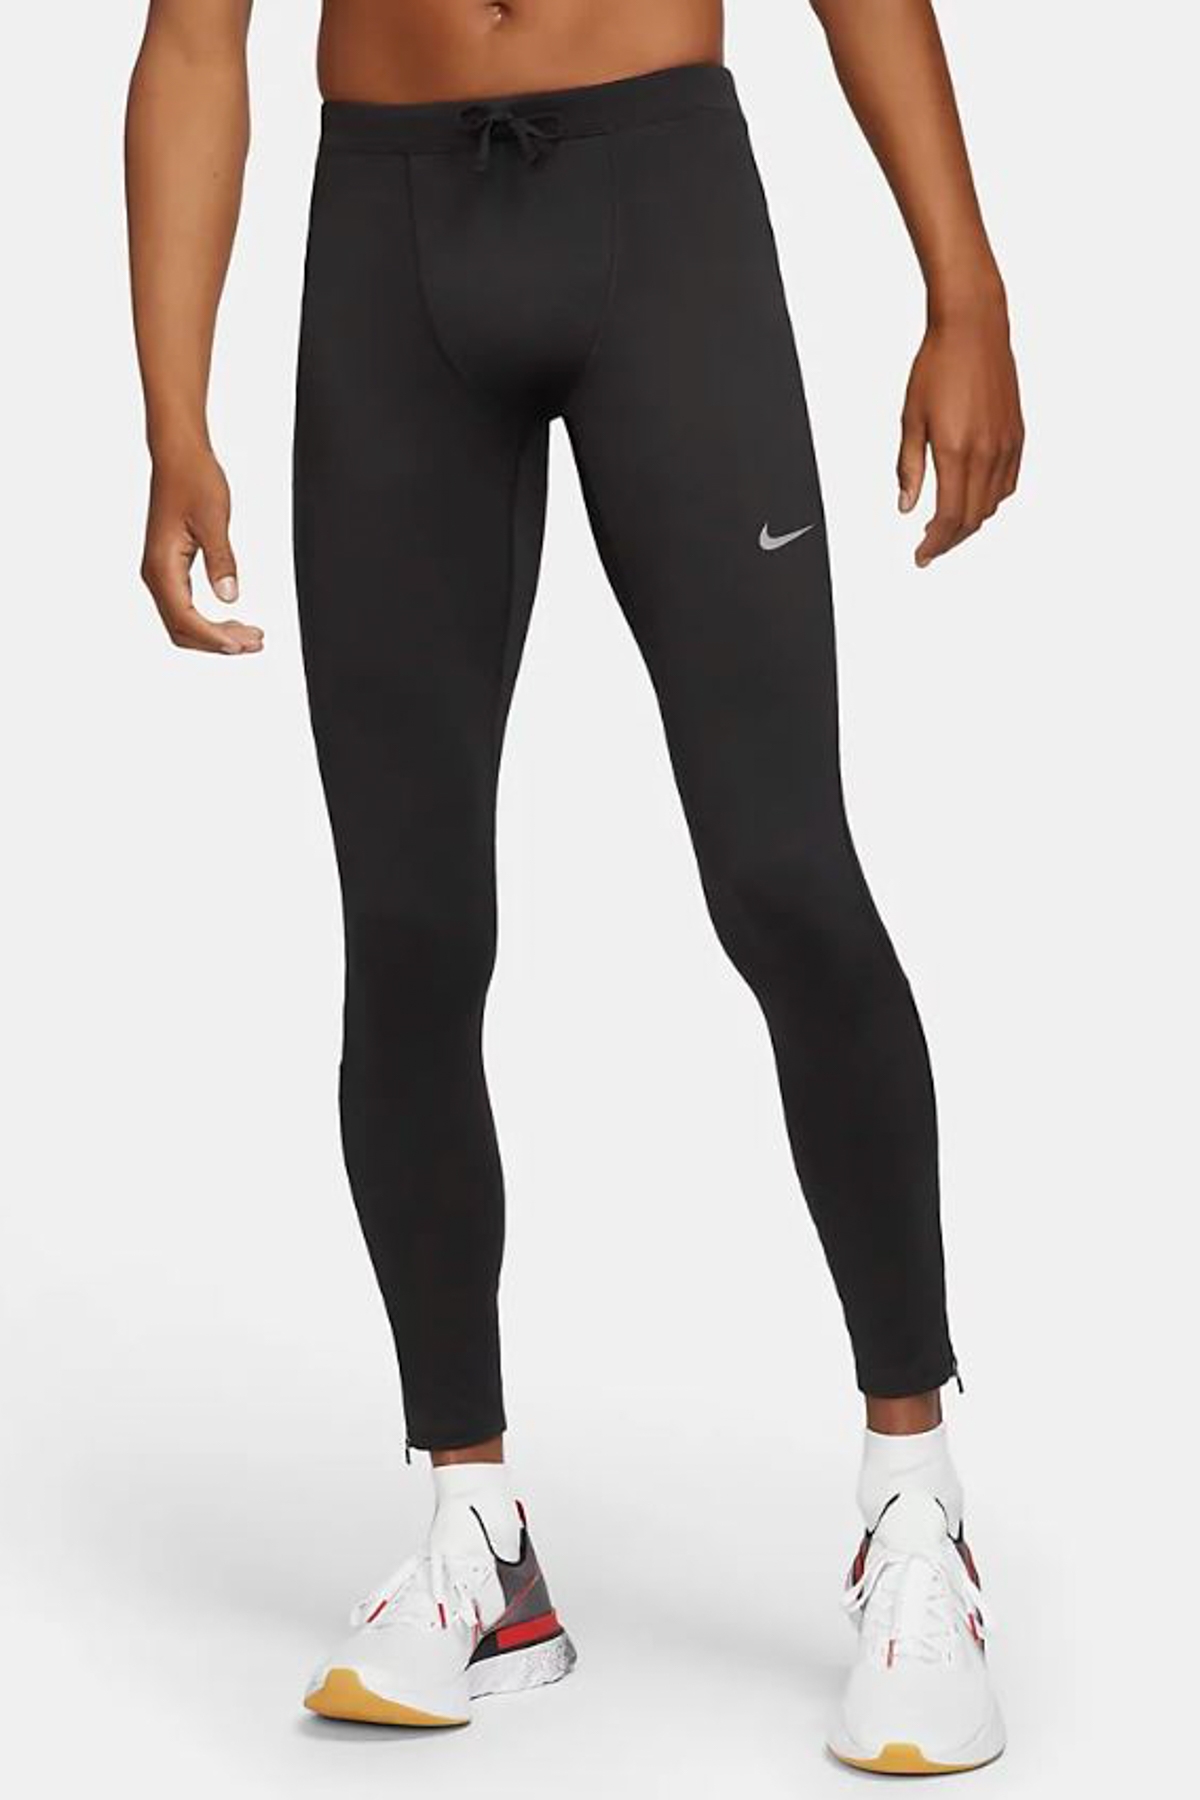 Nike Yoga Dri-fit Siyah Erkek Tayt Şort Fiyatları, Özellikleri ve Yorumları